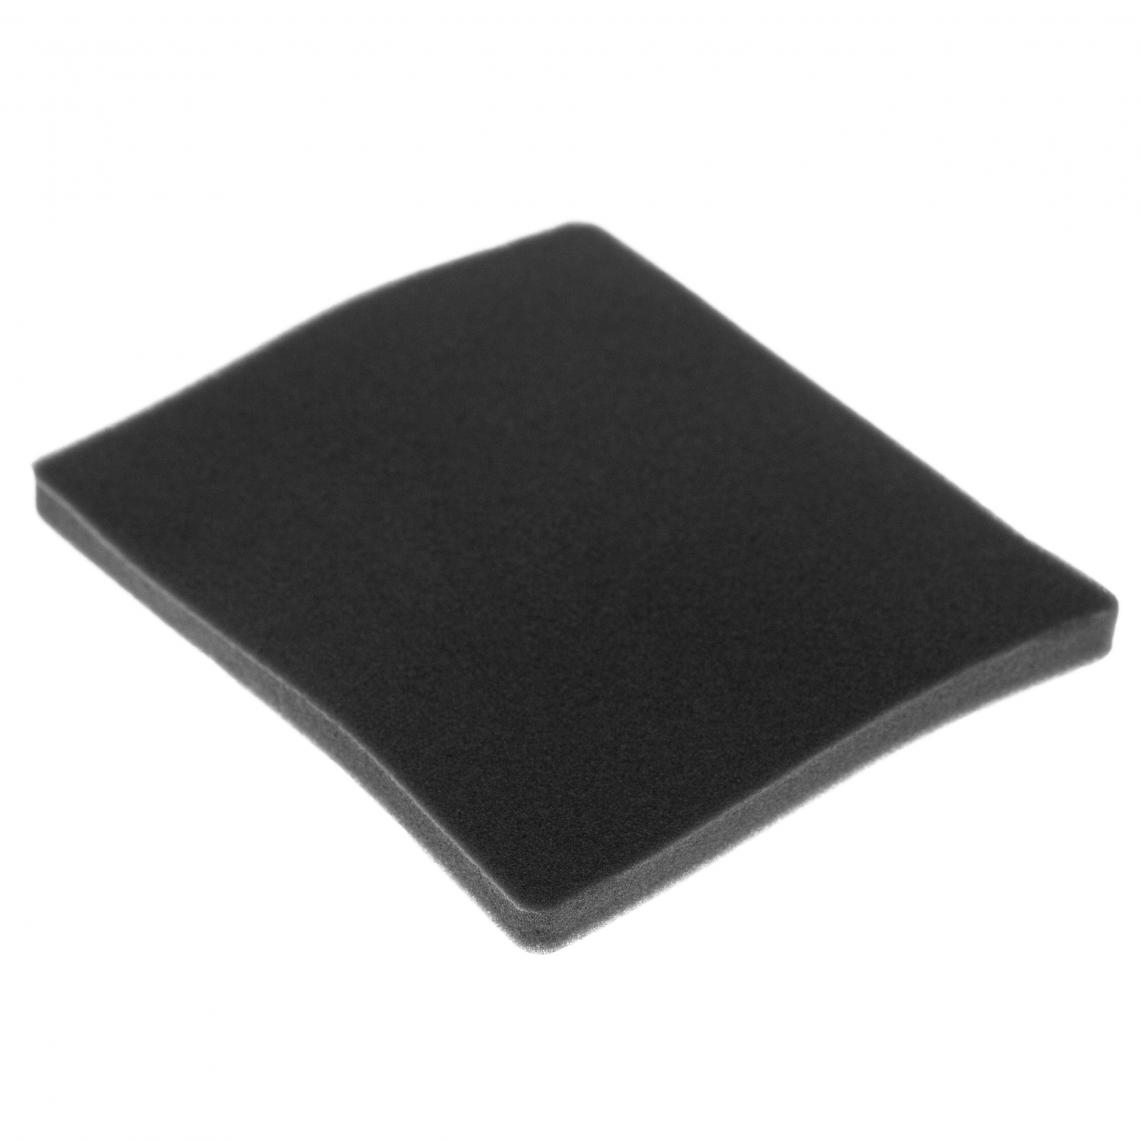 Vhbw - vhbw Filtre compatible avec Electrolux ZAC6742 (910288309) aspirateur - filtre de sortie d'air (filtre éponge), noir - Accessoire entretien des sols